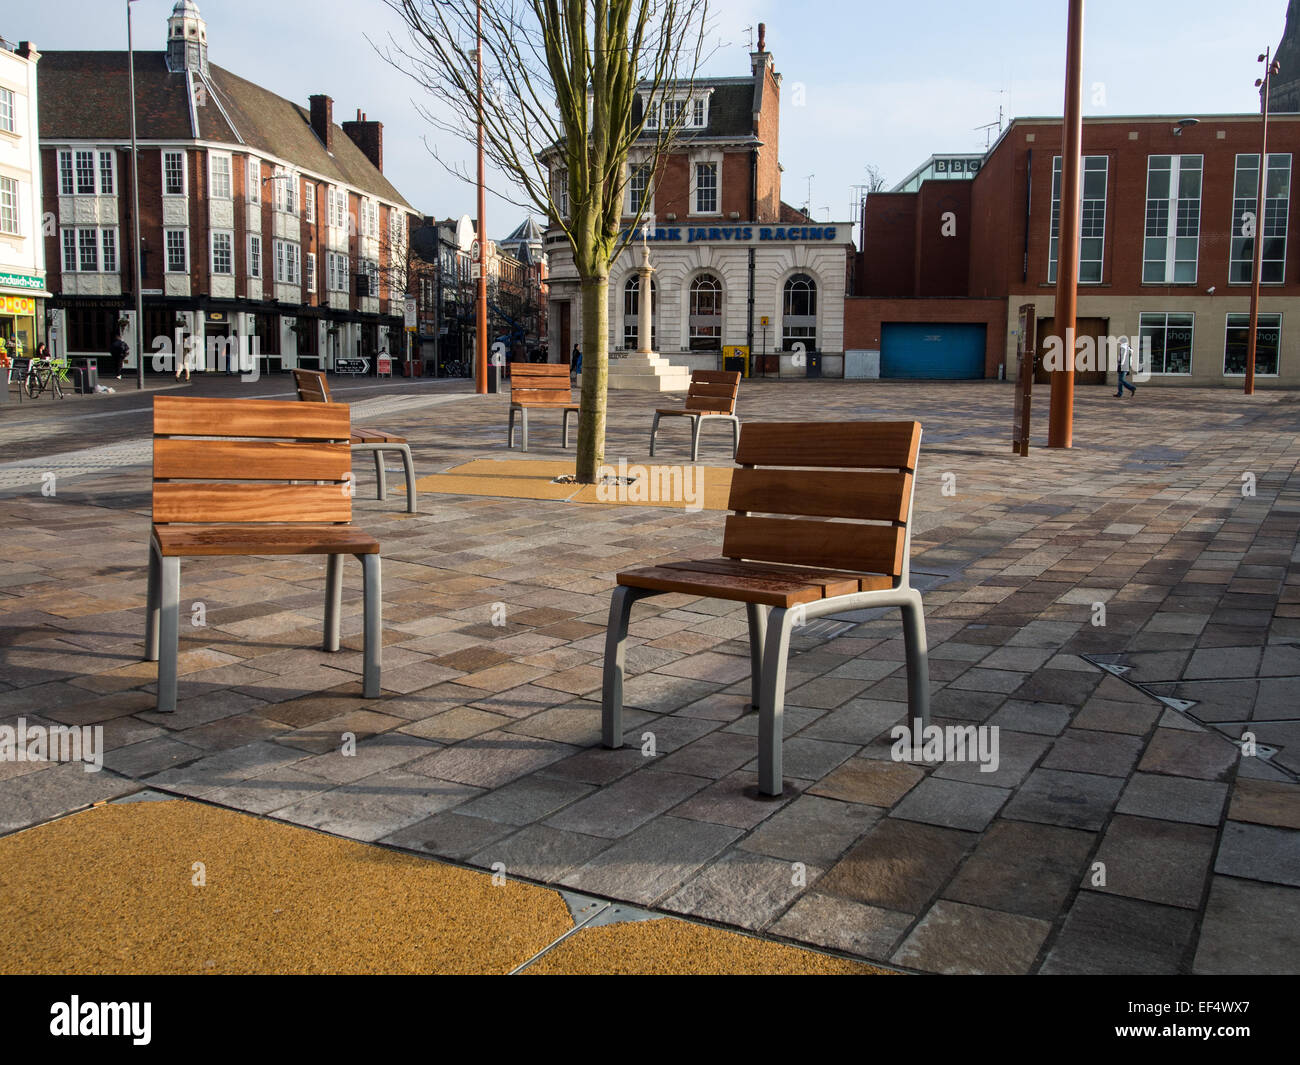 Mobiliario urbano: la madera en asientos de metal fija en la zona de pavimento de granito del Jubileo, Cuadrado, Highcross Leicester. Foto de stock